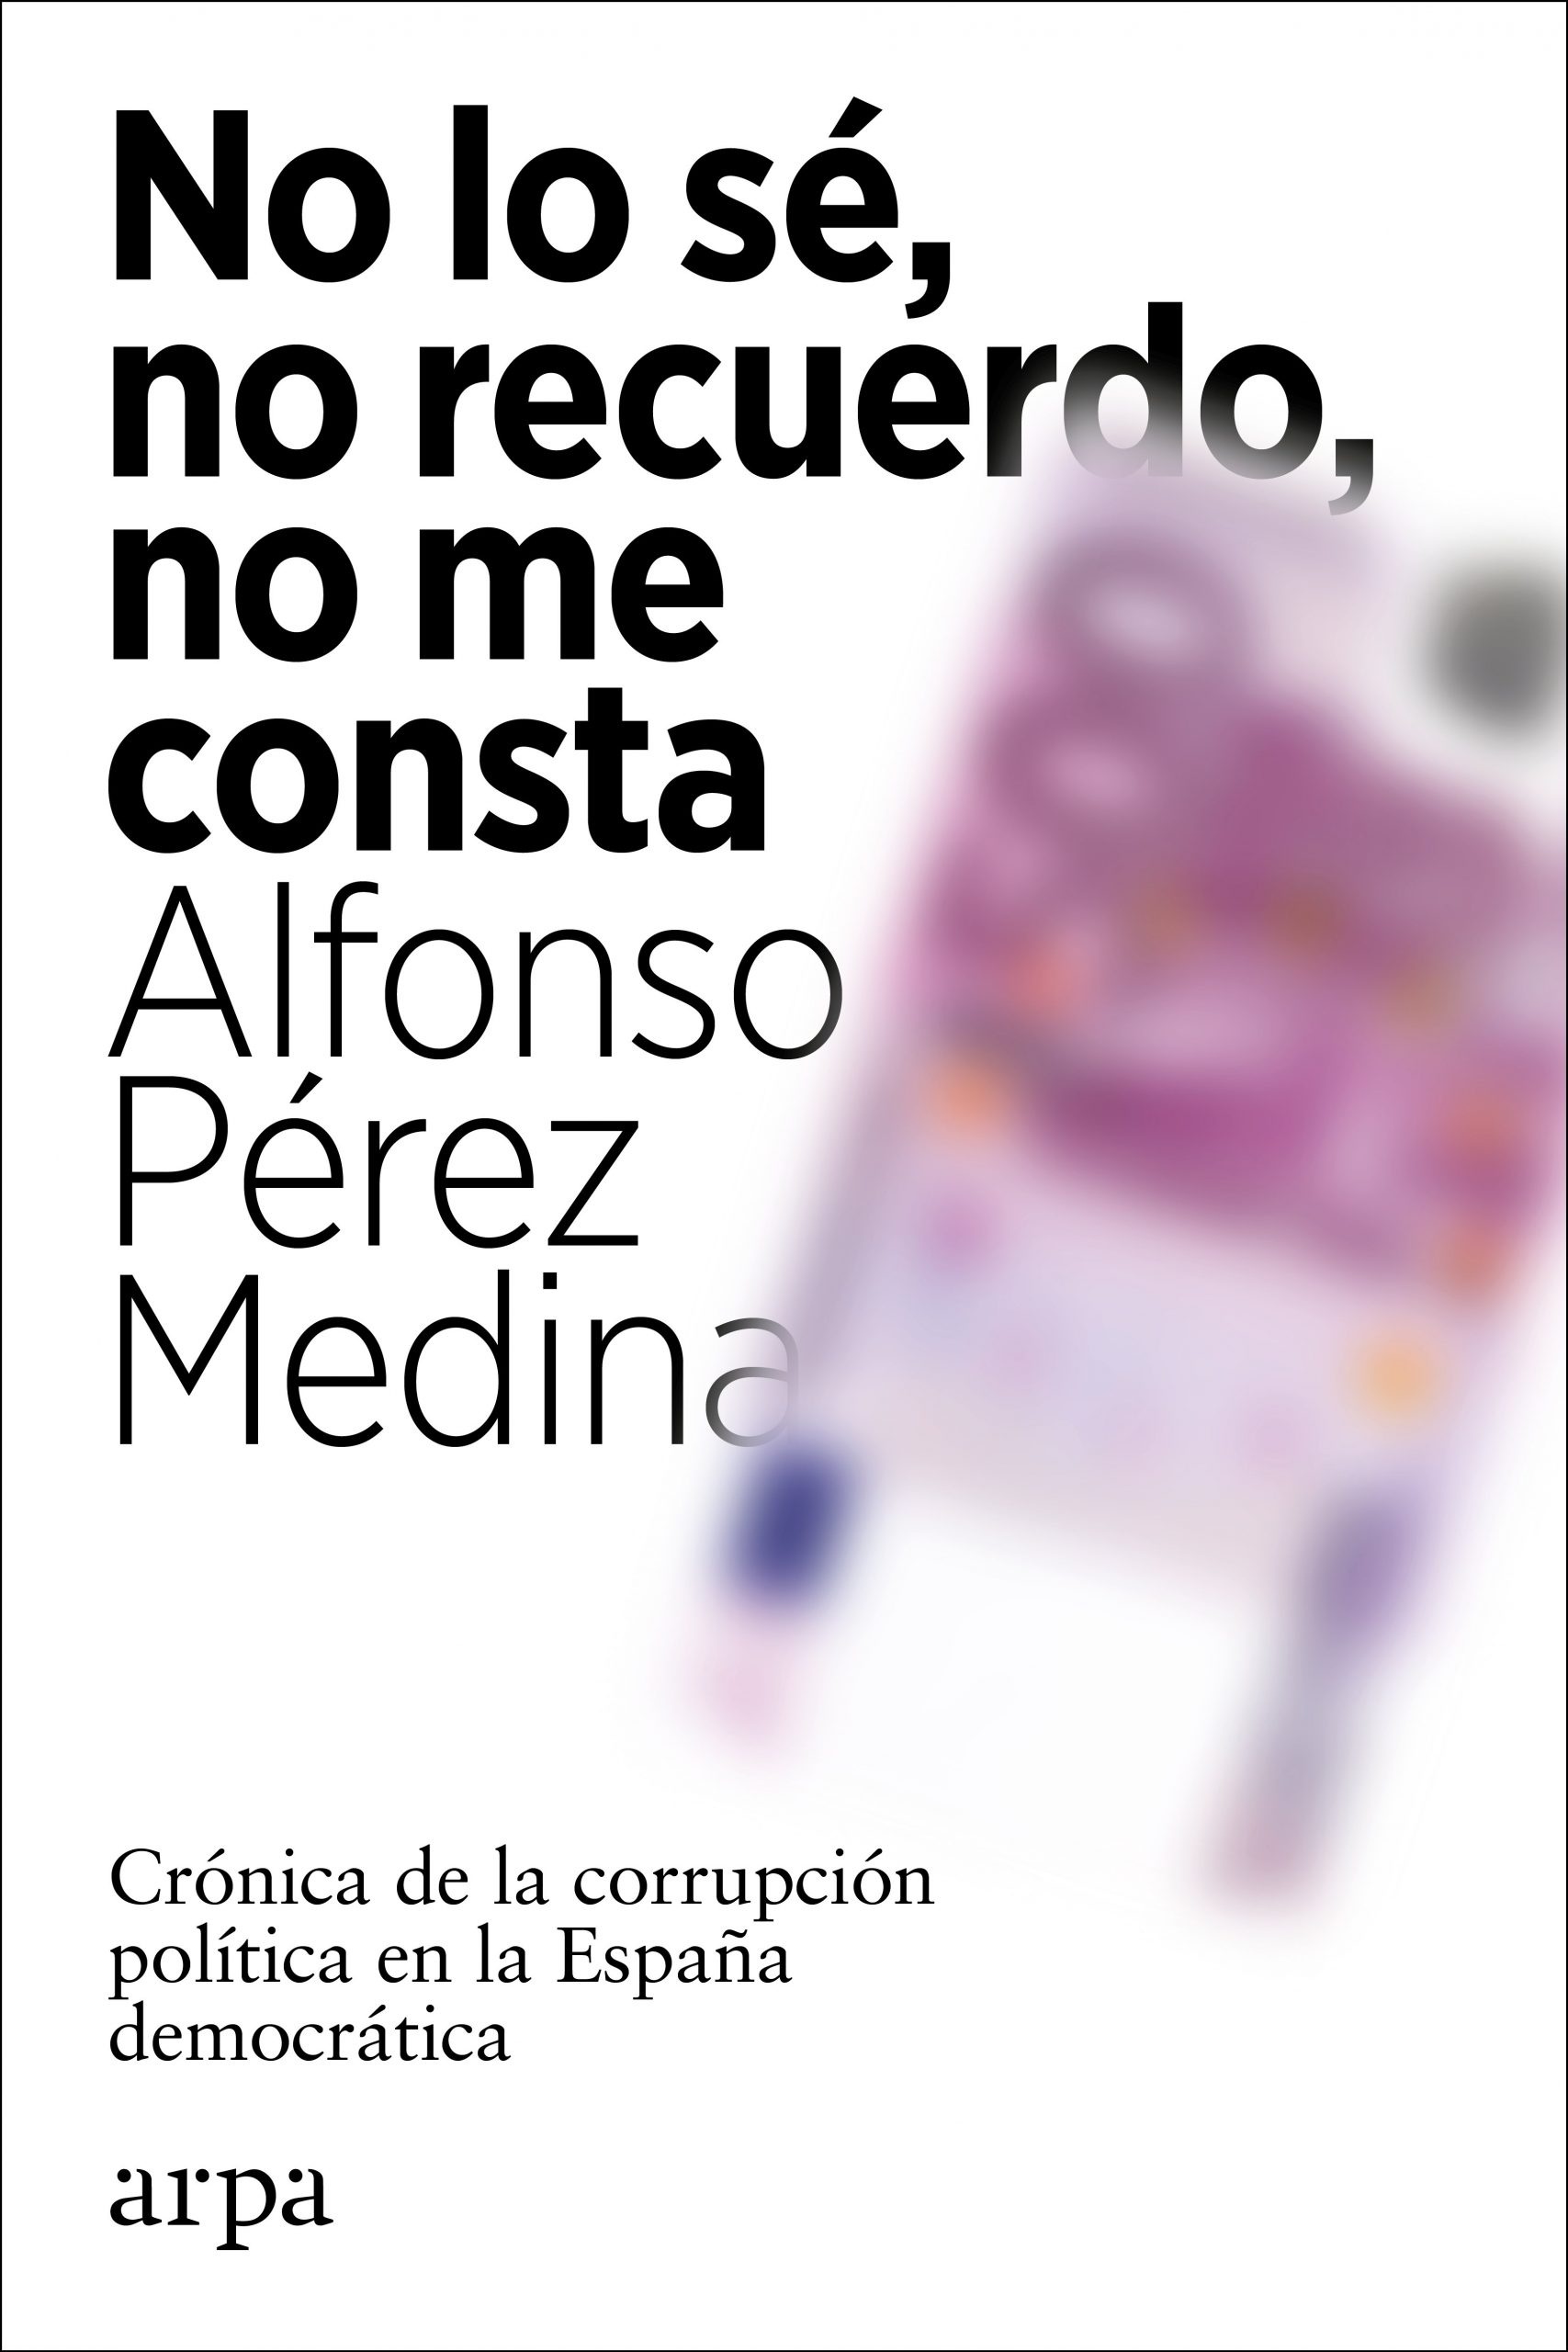 No lo sé, no recuerdo, no me consta "Crónica de la corrupción política en la España democrática"